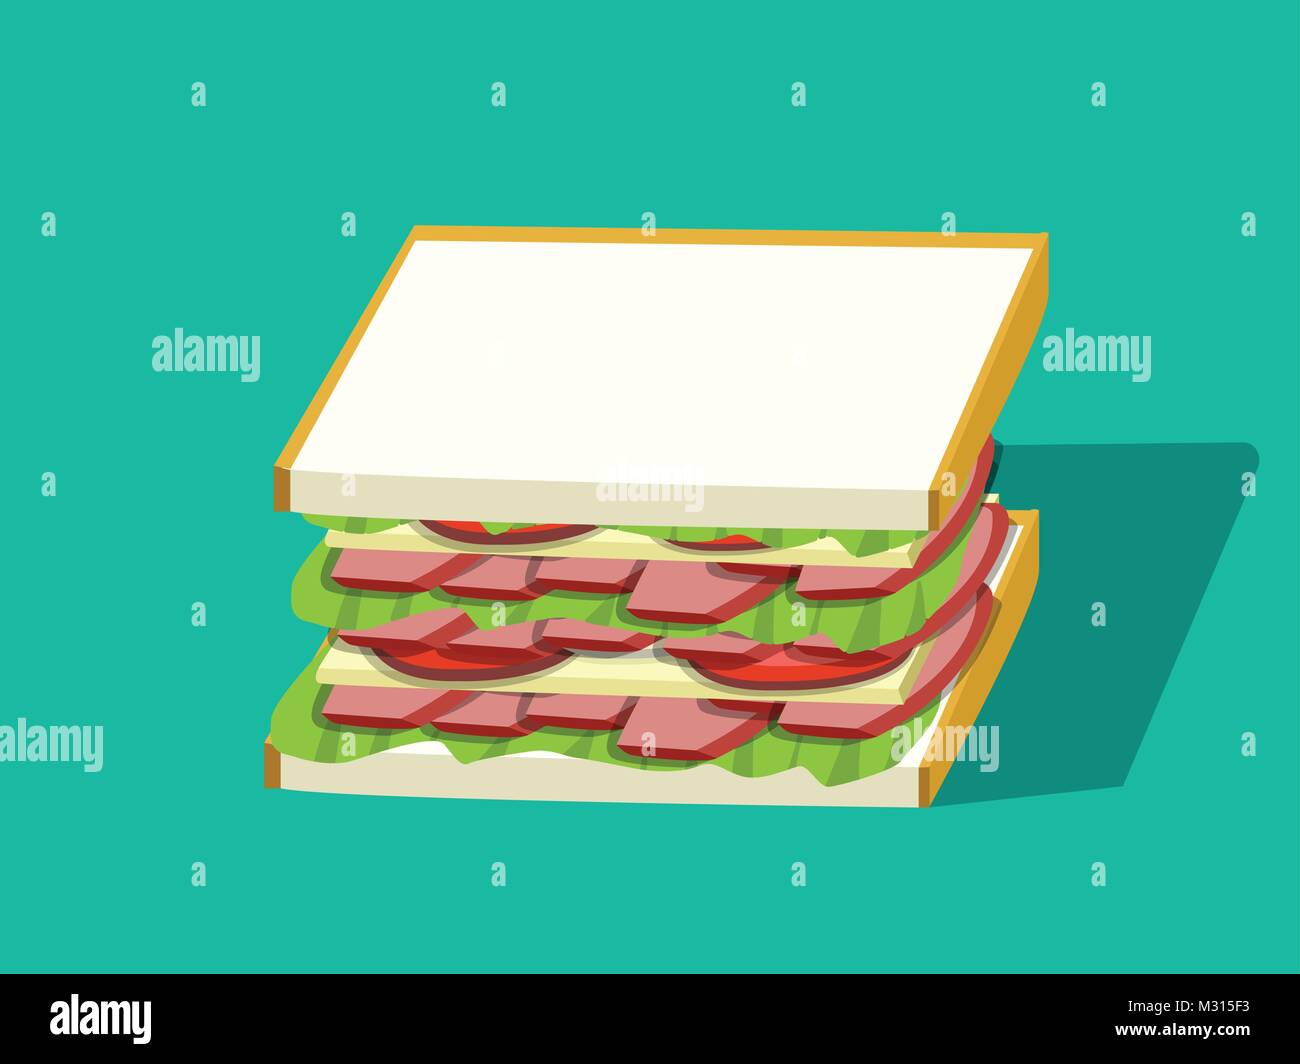 Corn beef sandwich dans vector design, vue en perspective Illustration de Vecteur